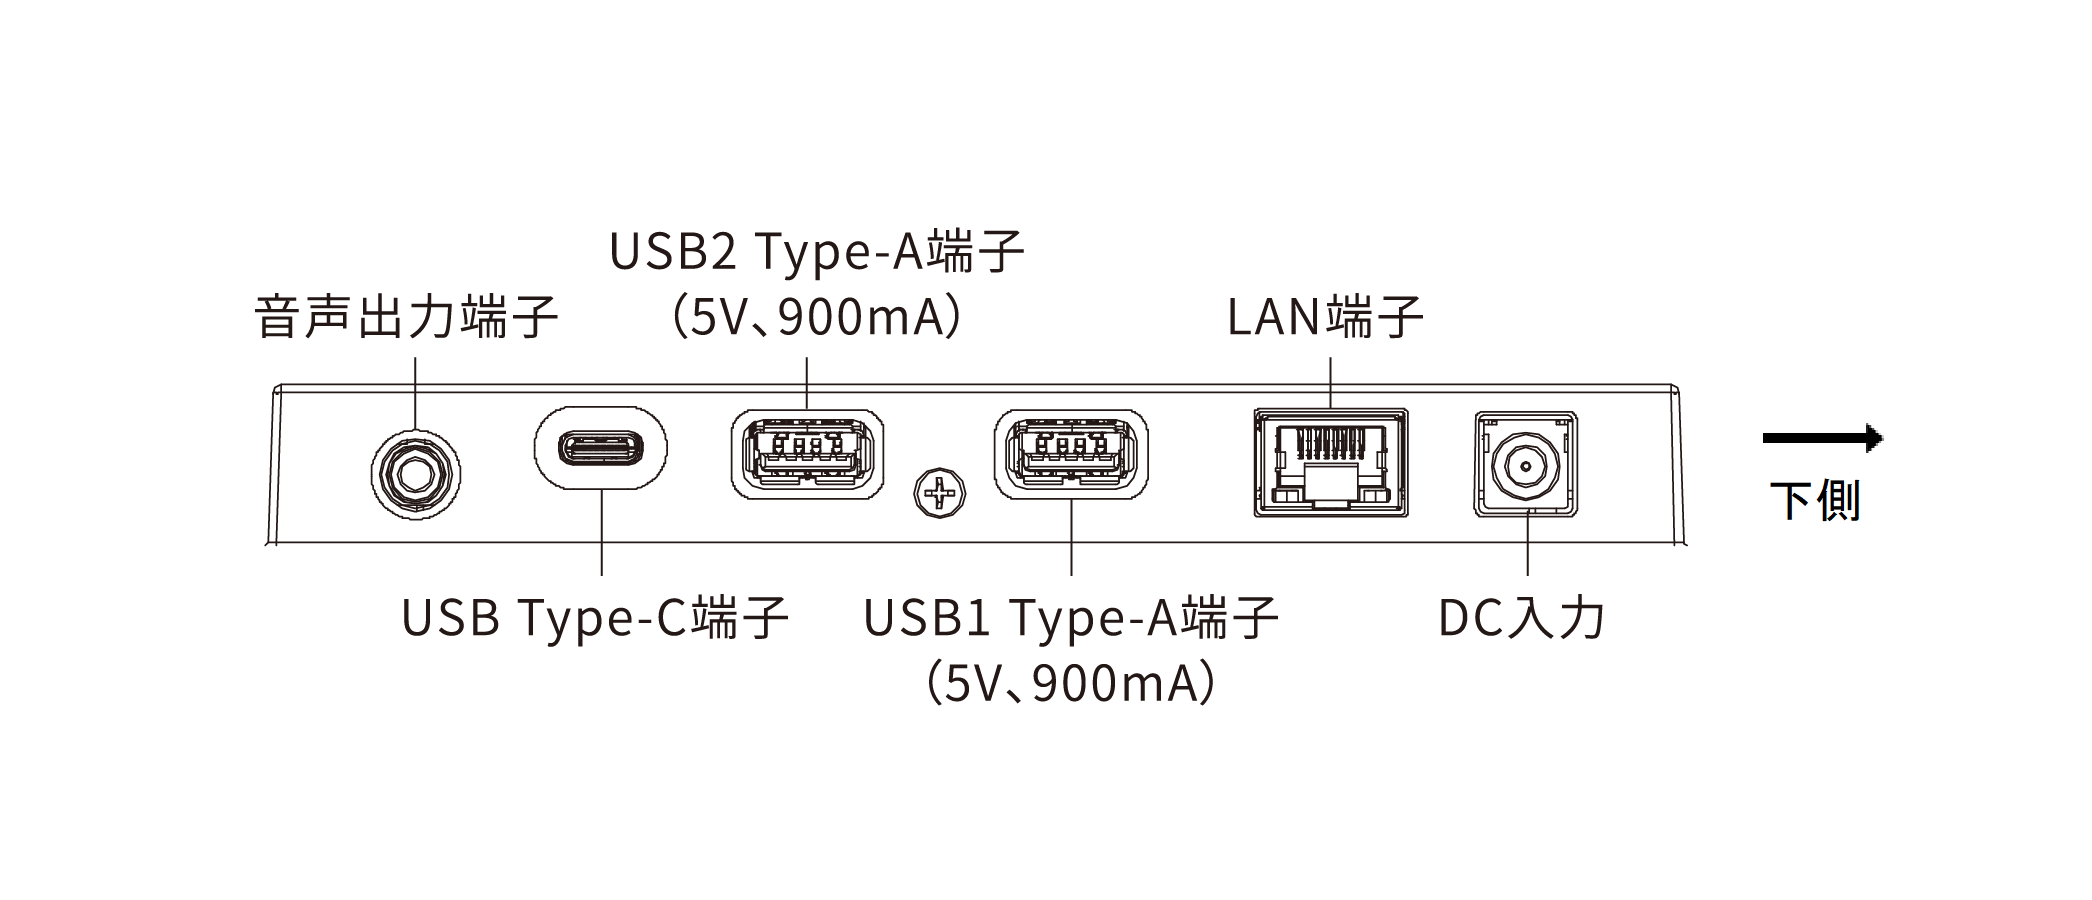 接続端子部分の図：上から、音声出力端子、USB Type-C端子、 USB Type-A端子（5V、900mA）、USB Type-A端子（5V、900mA）、LAN端子、DC入力があります。